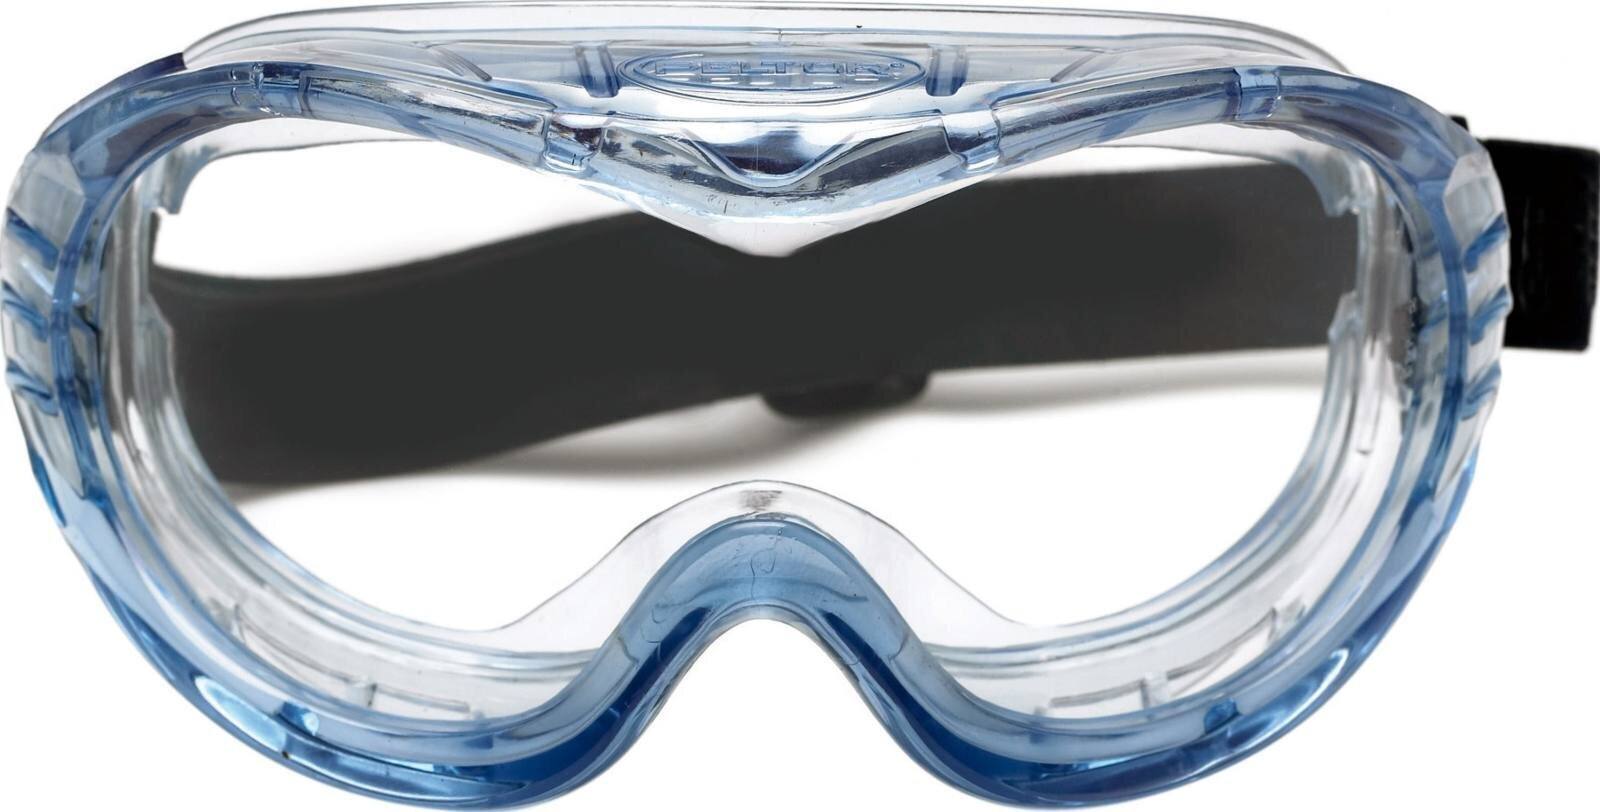 Occhiali di sicurezza 3M Fahrenheit AS/AF/UV, PC, trasparenti, rivestimento in Hardium, ventilazione indiretta, fascia in nylon, incluso sacchetto in microfibra Fheit